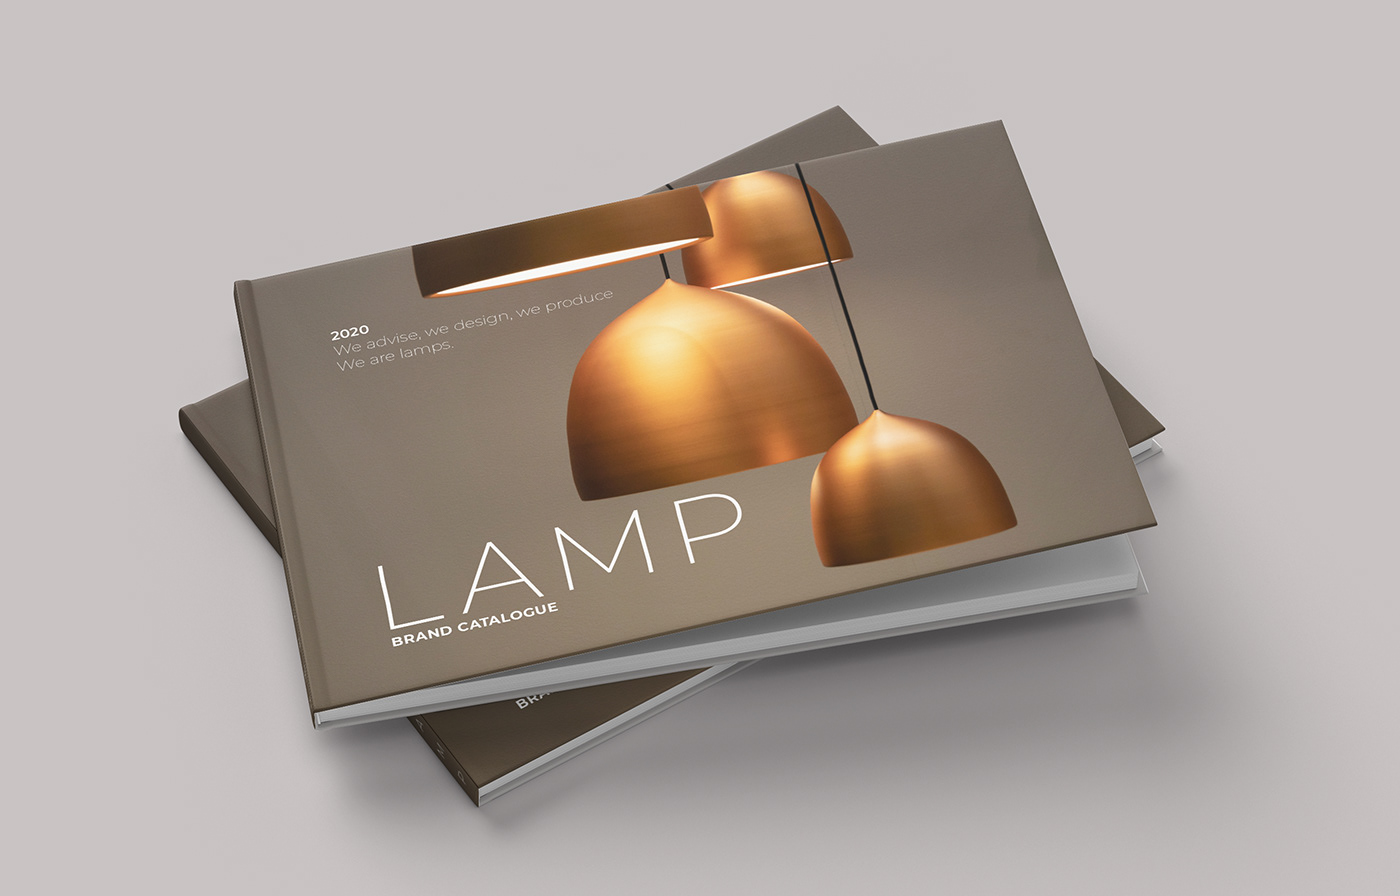 欣赏国外灯具产品画册设计作品,灯具产品宣传设计。